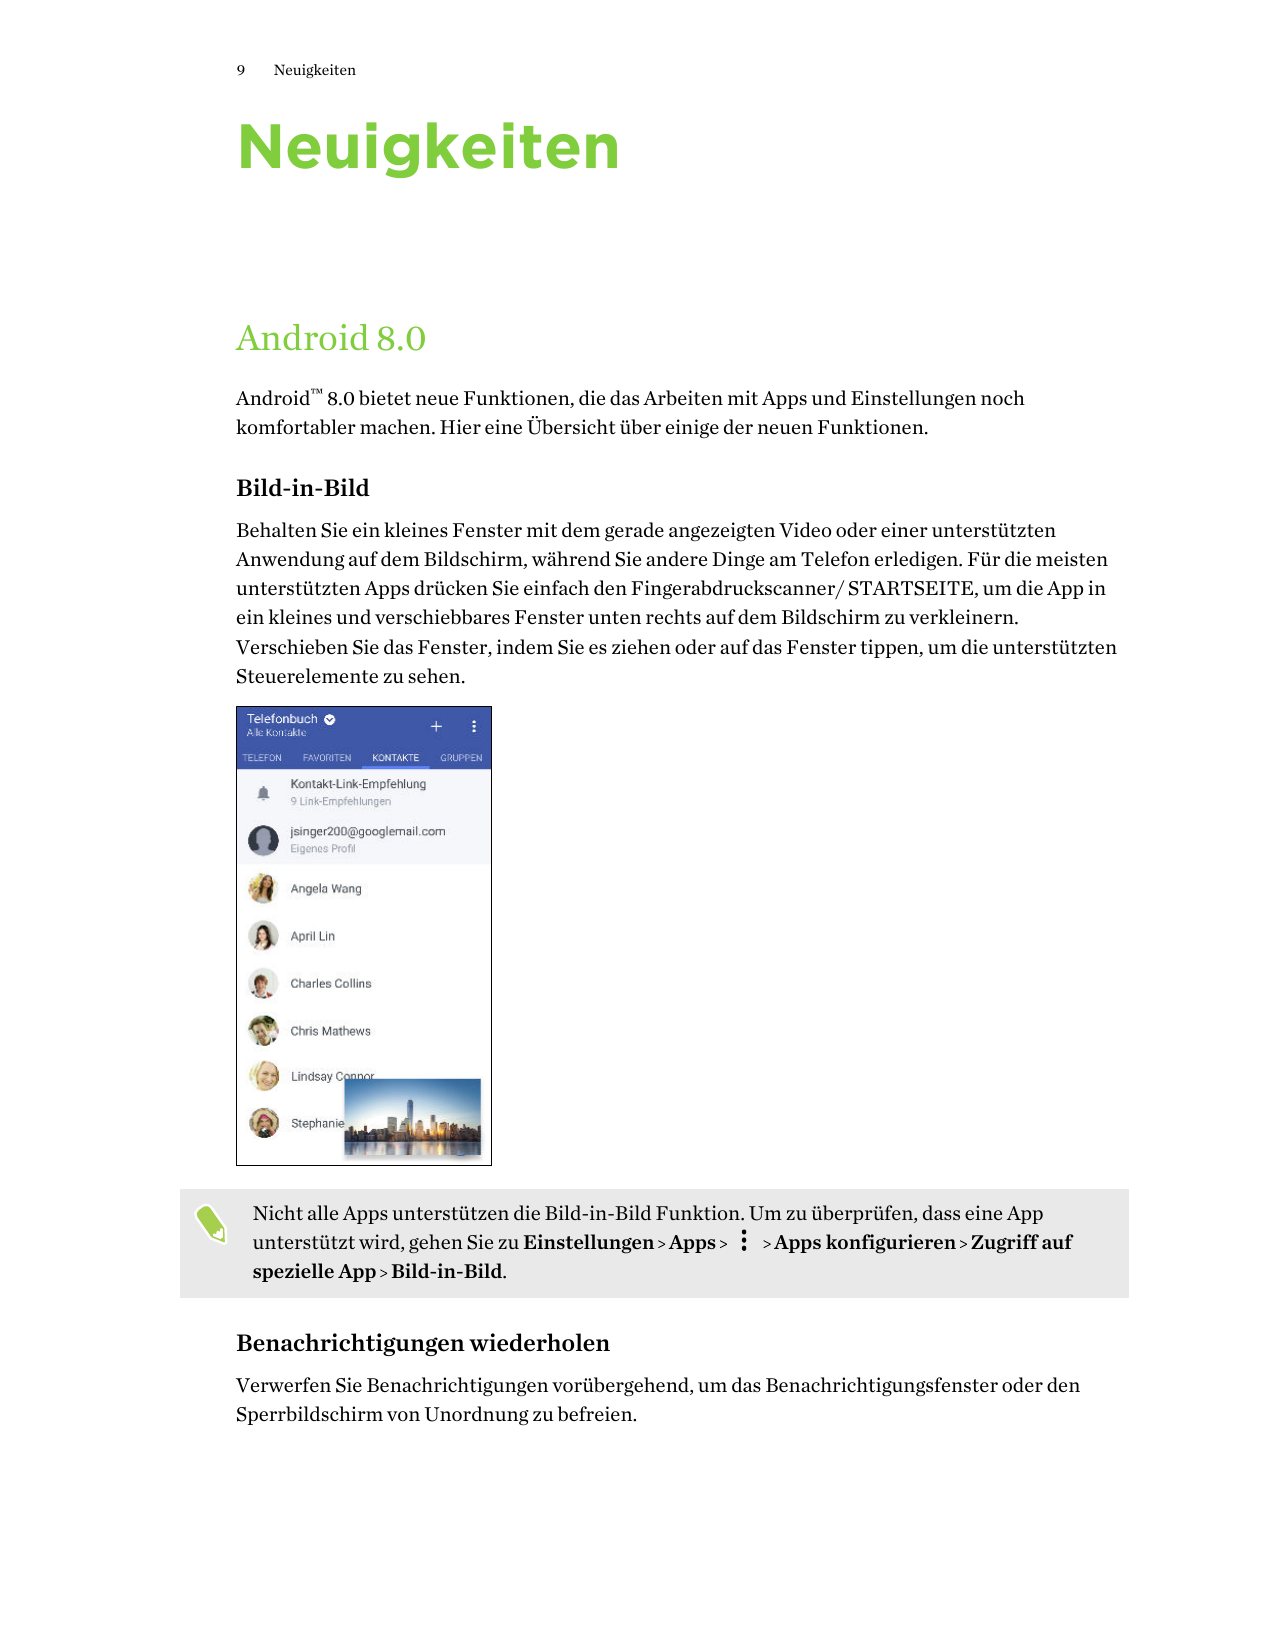 9NeuigkeitenNeuigkeitenAndroid 8.0Android™ 8.0 bietet neue Funktionen, die das Arbeiten mit Apps und Einstellungen nochkomfortab